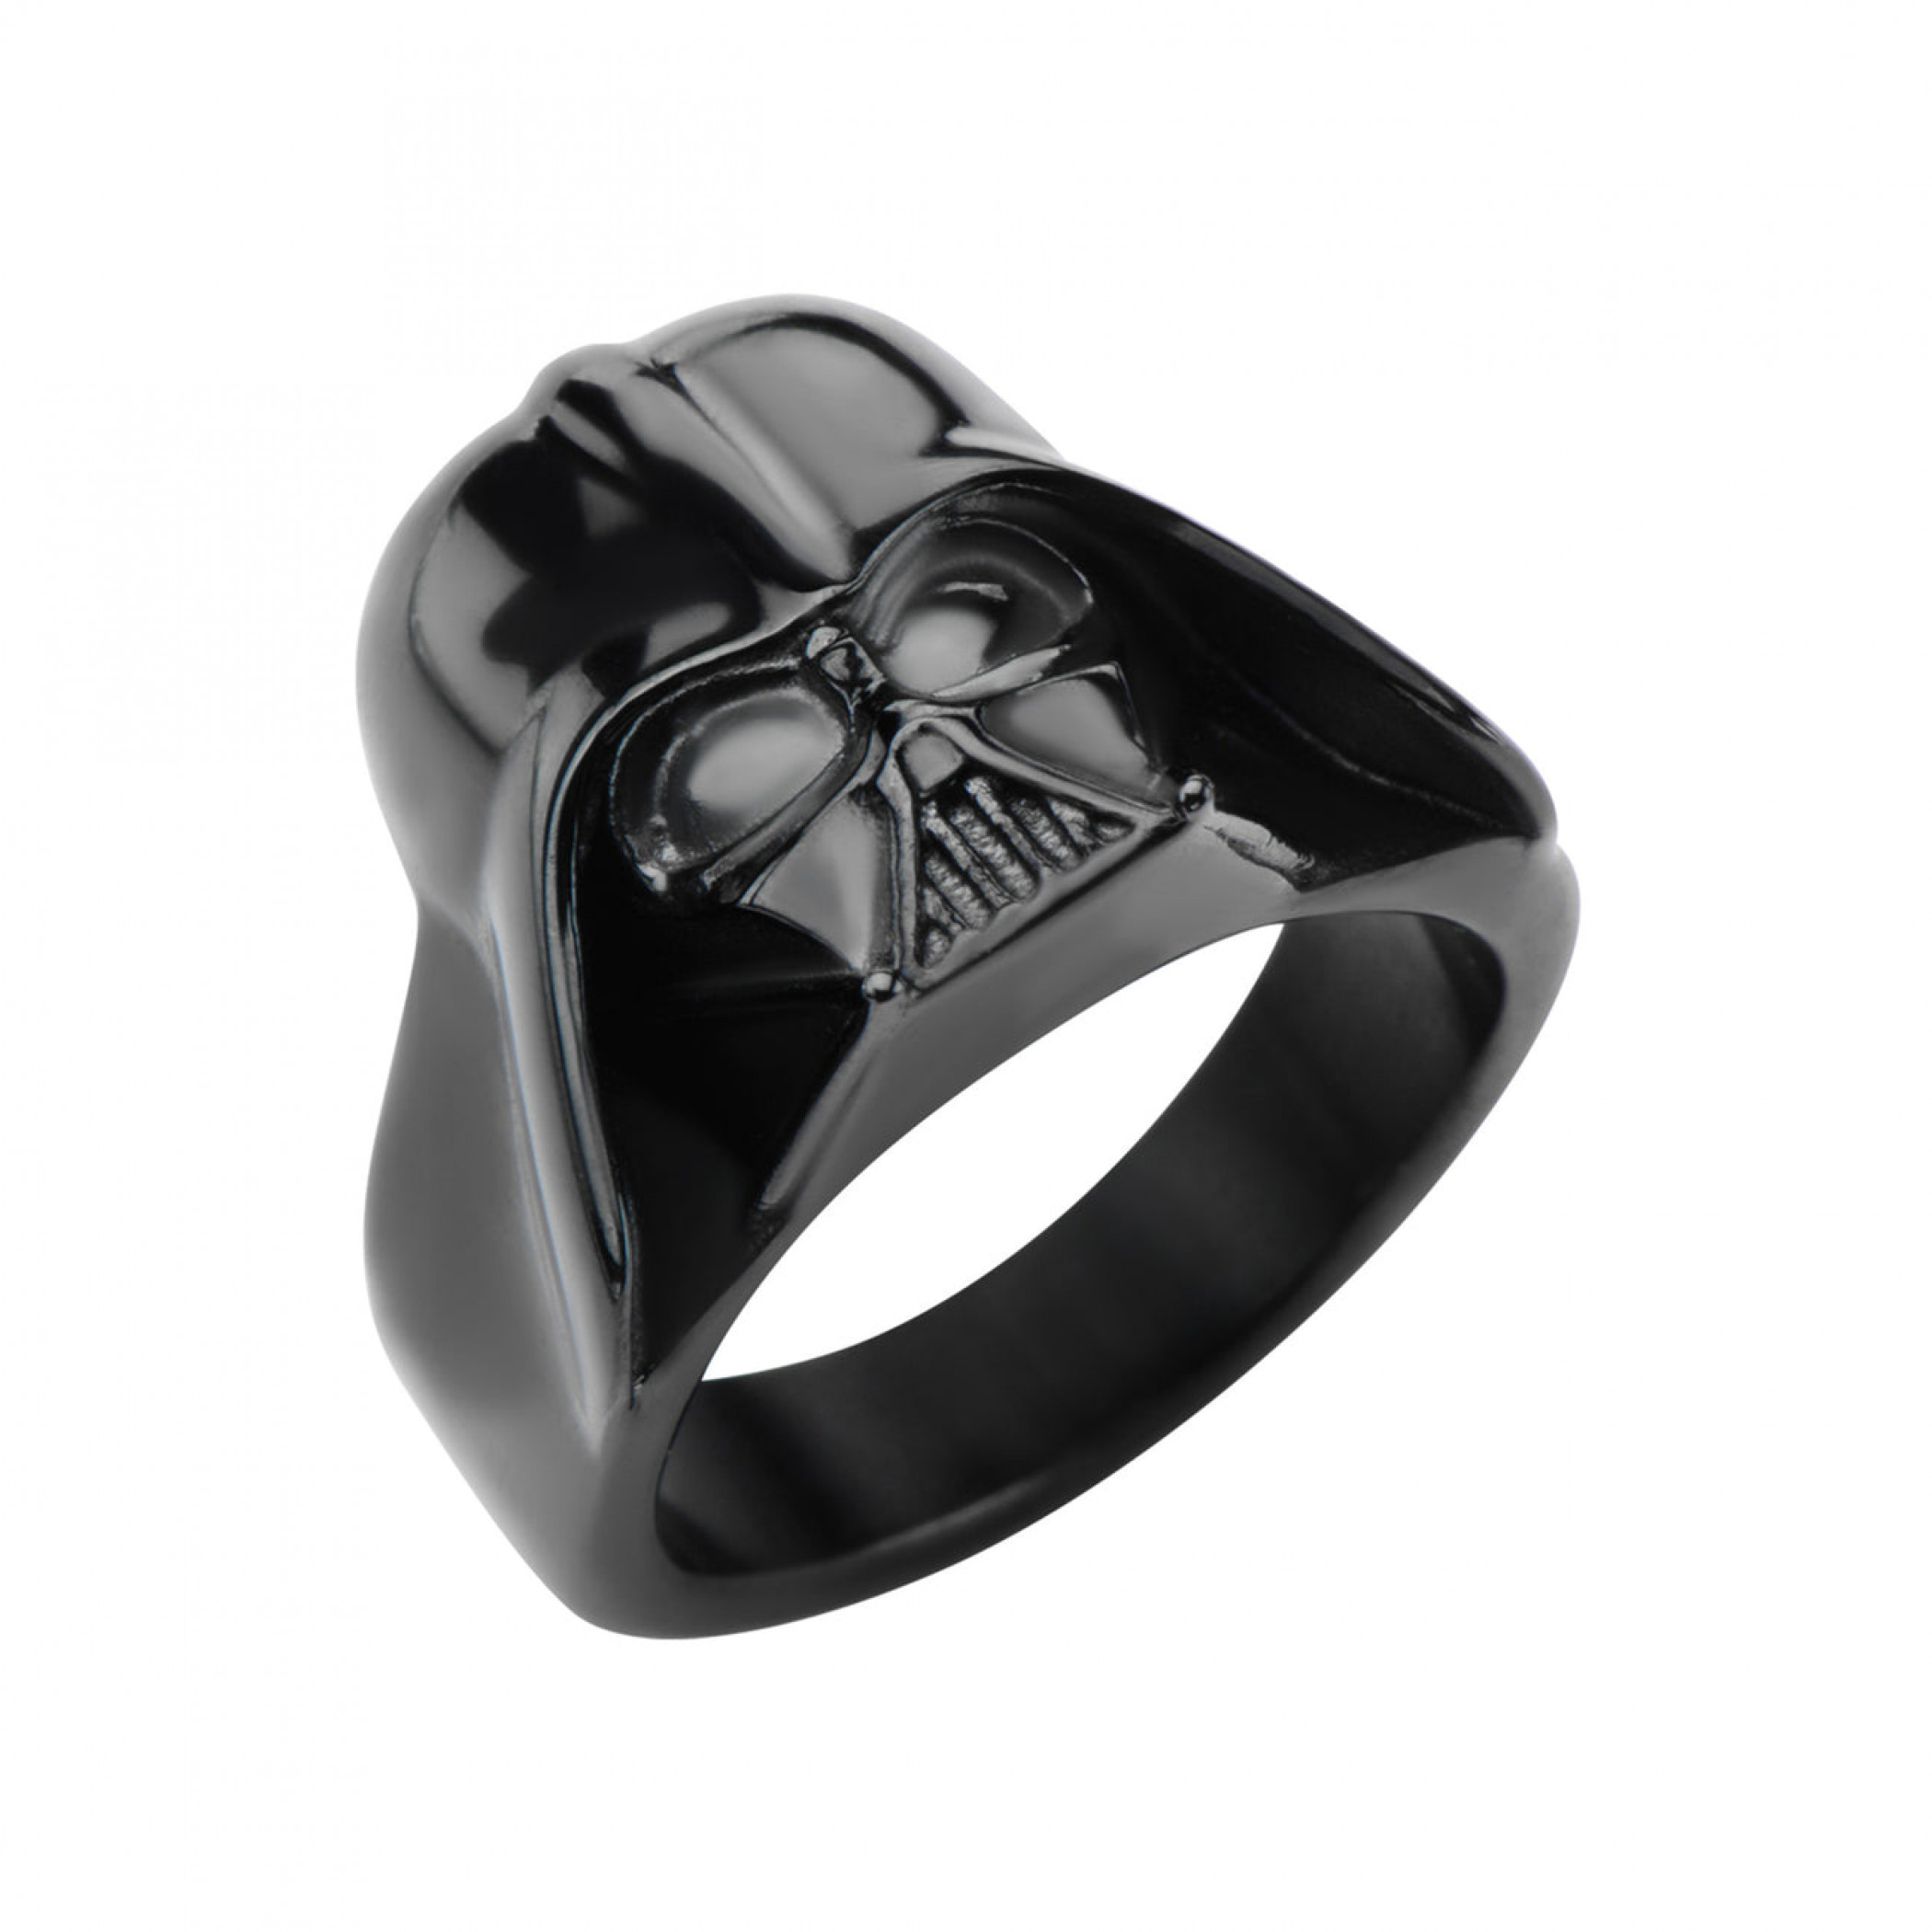 Star Wars Darth Vader Helmet Ring